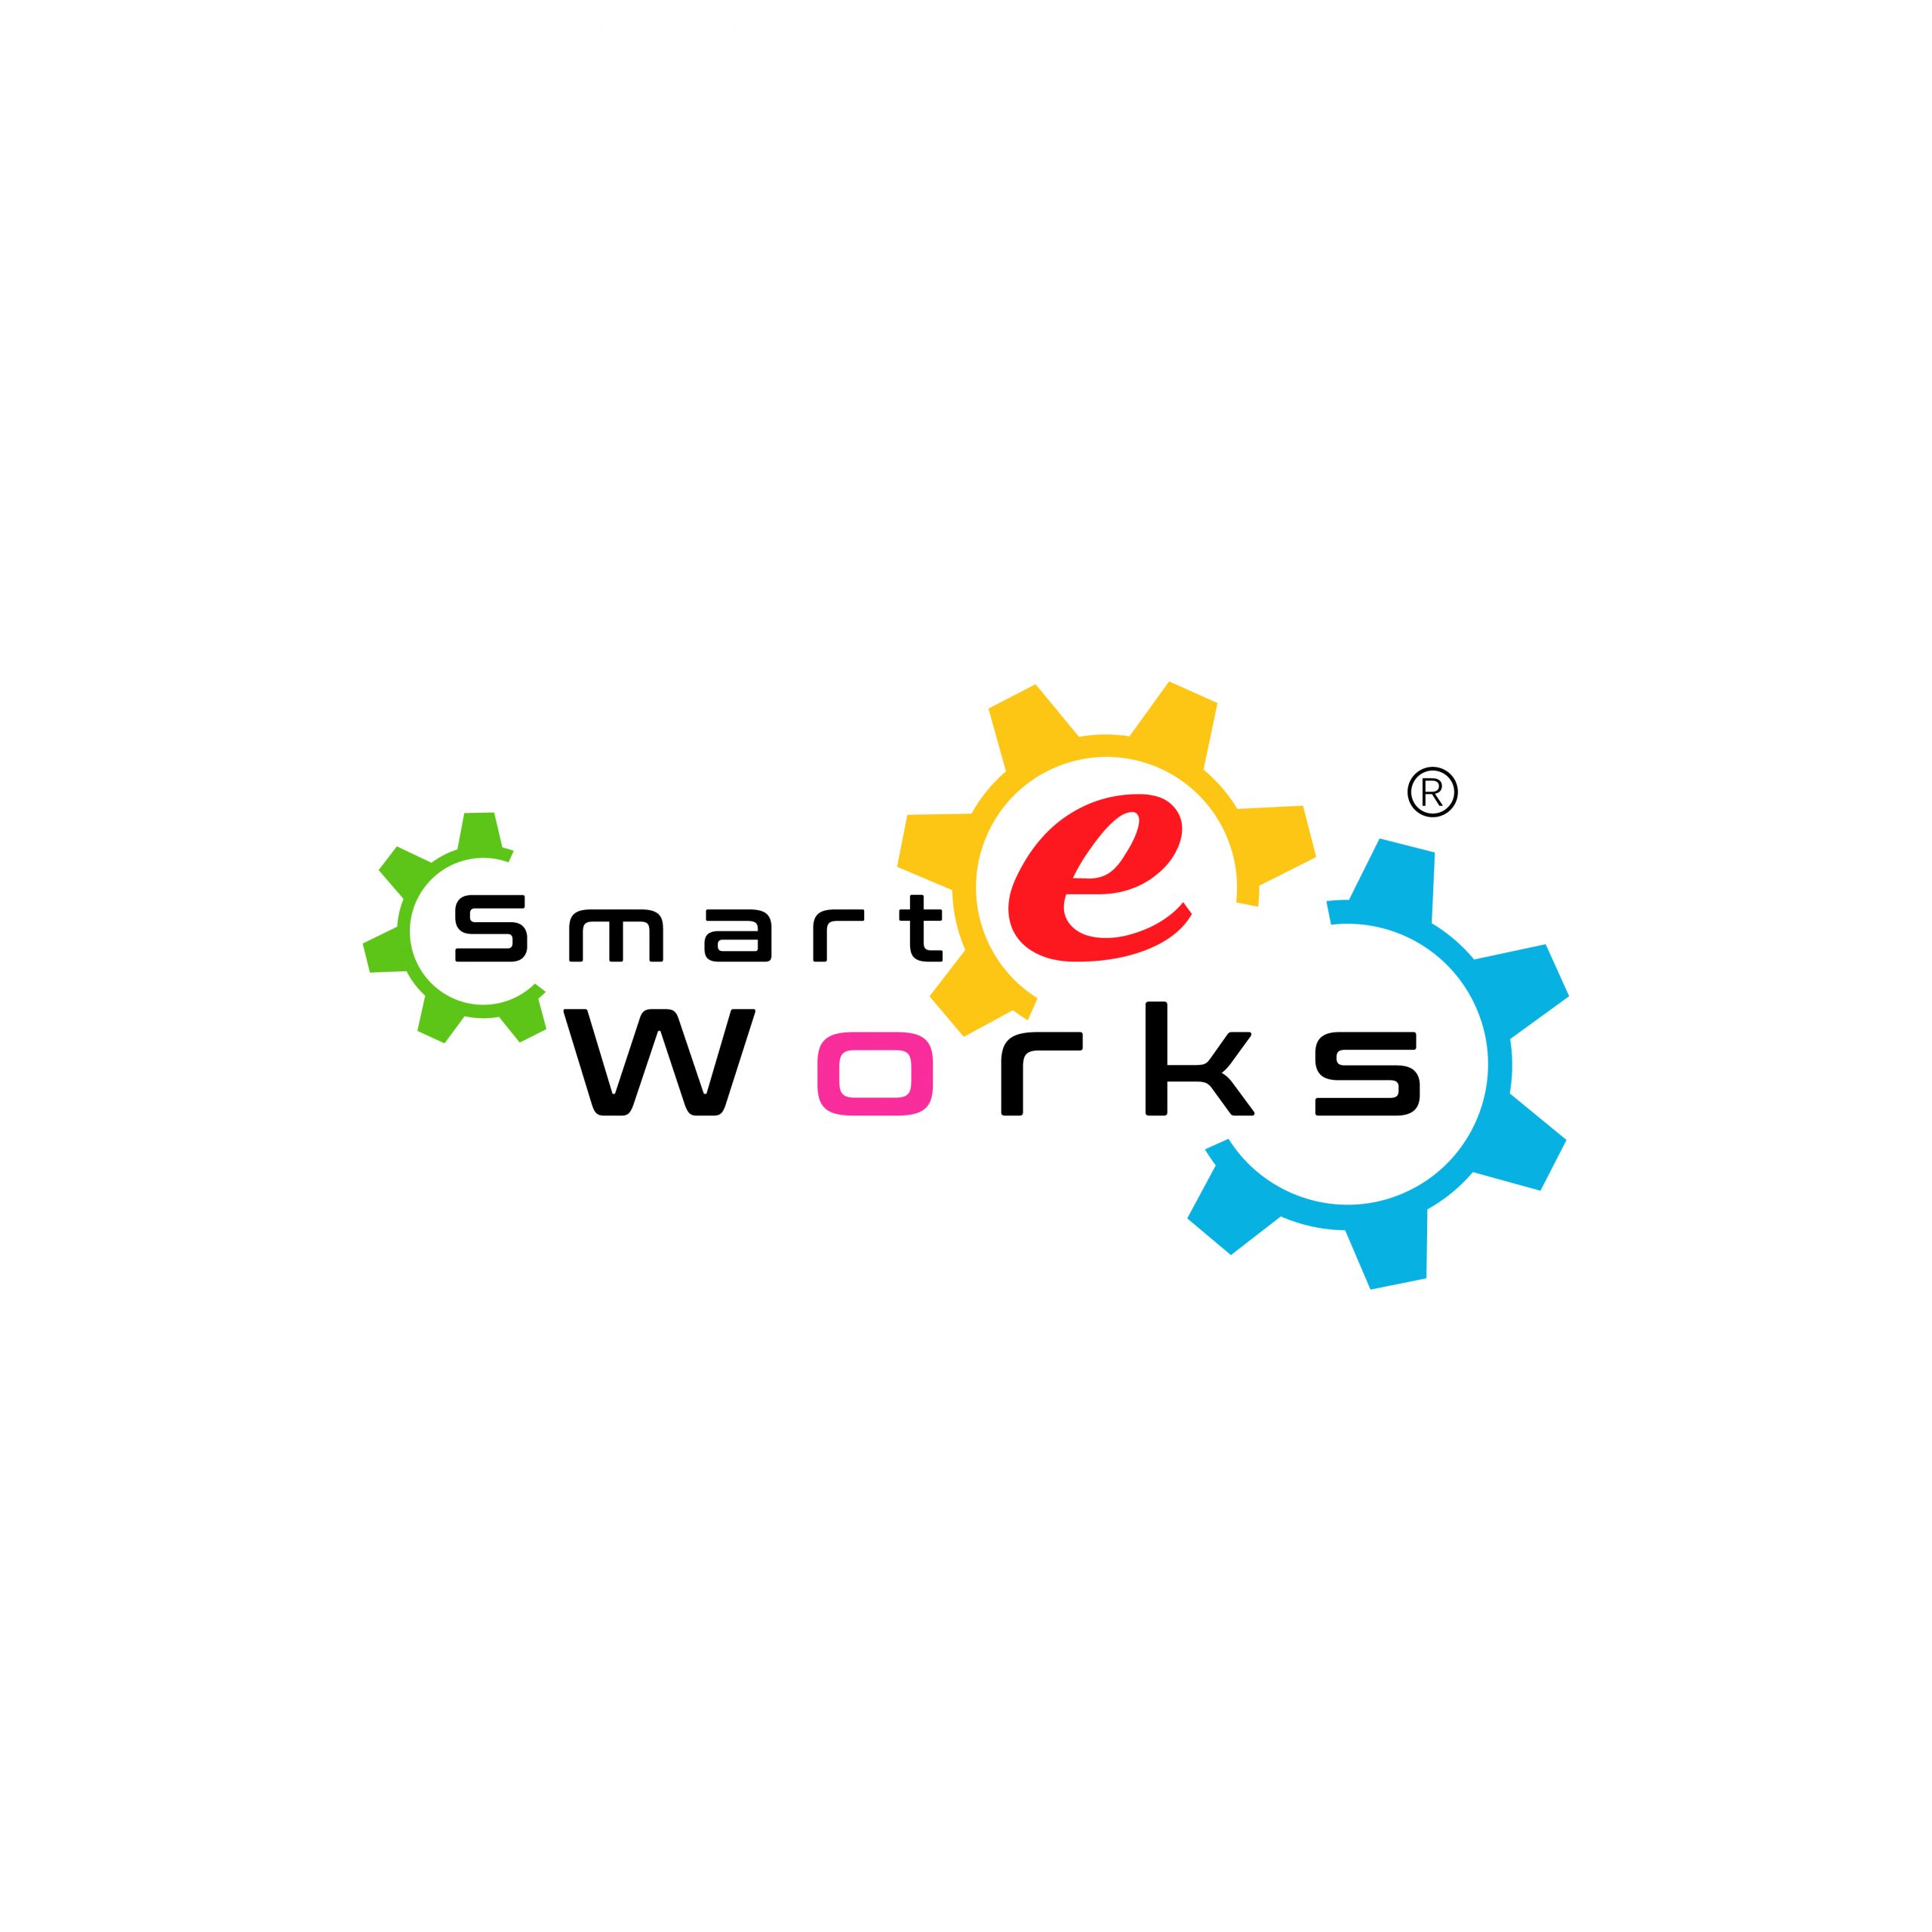 Smart eWorks Pvt Ltd